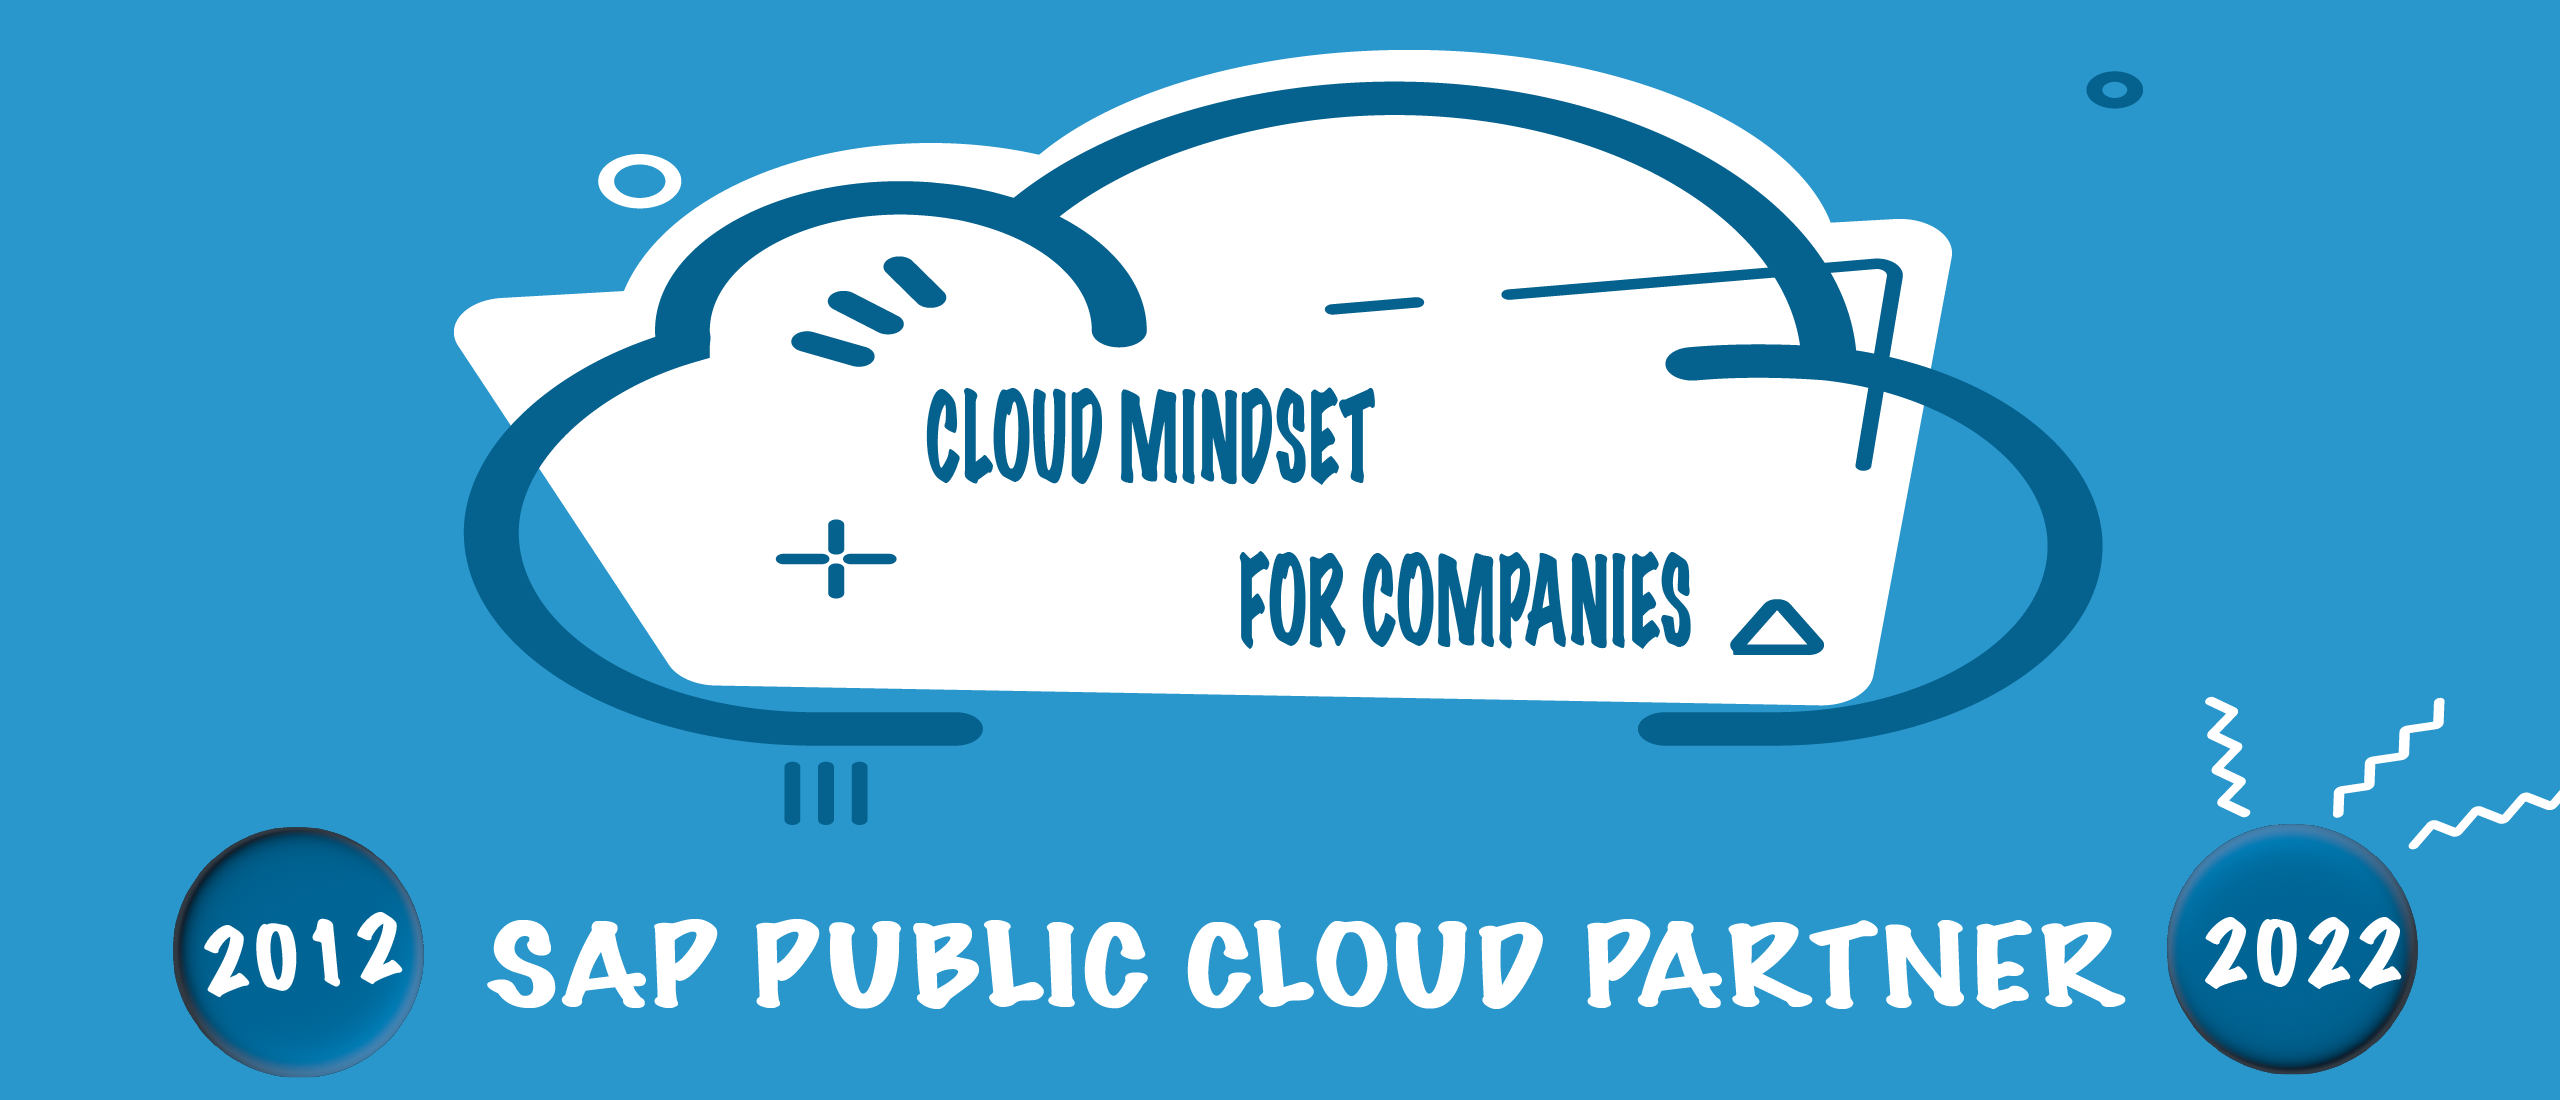 Create Cloud Mindset for SAP Public Cloud